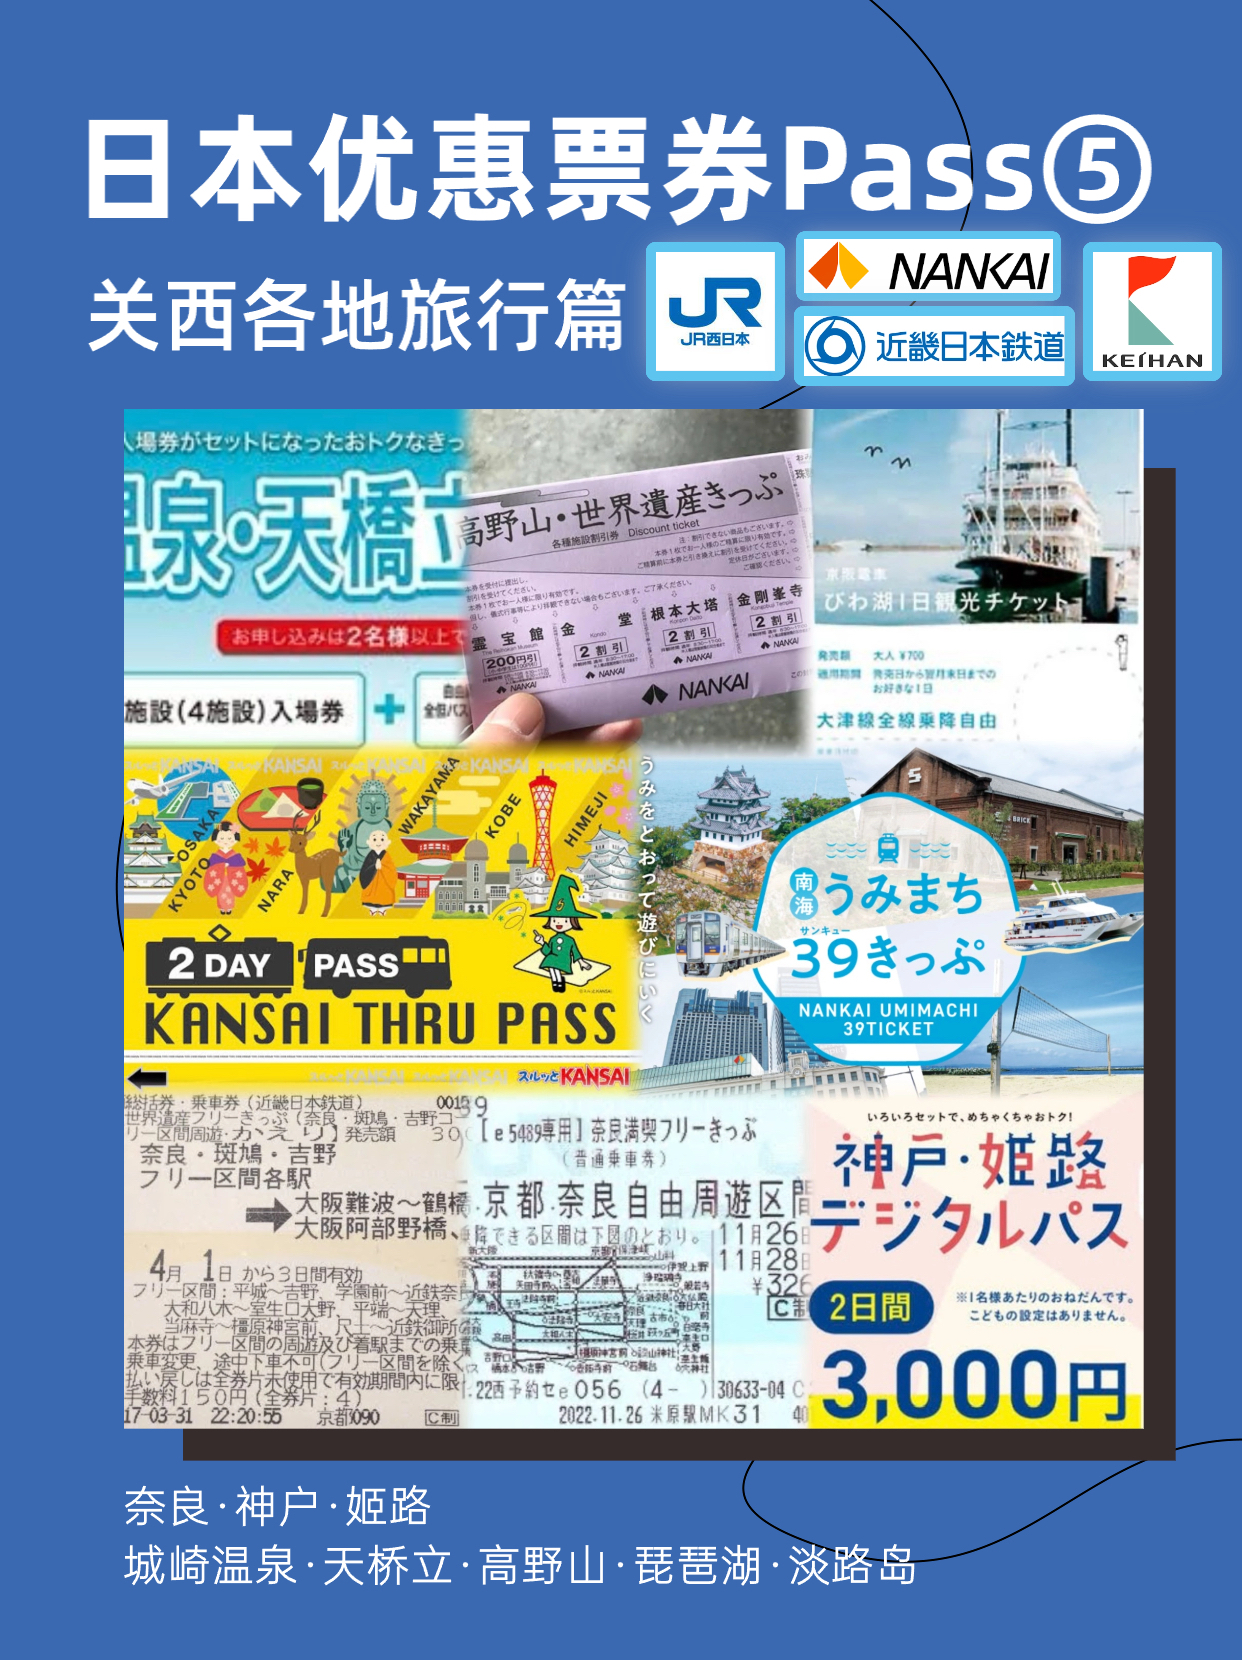 日本优惠票券PASS丨关西旅行篇